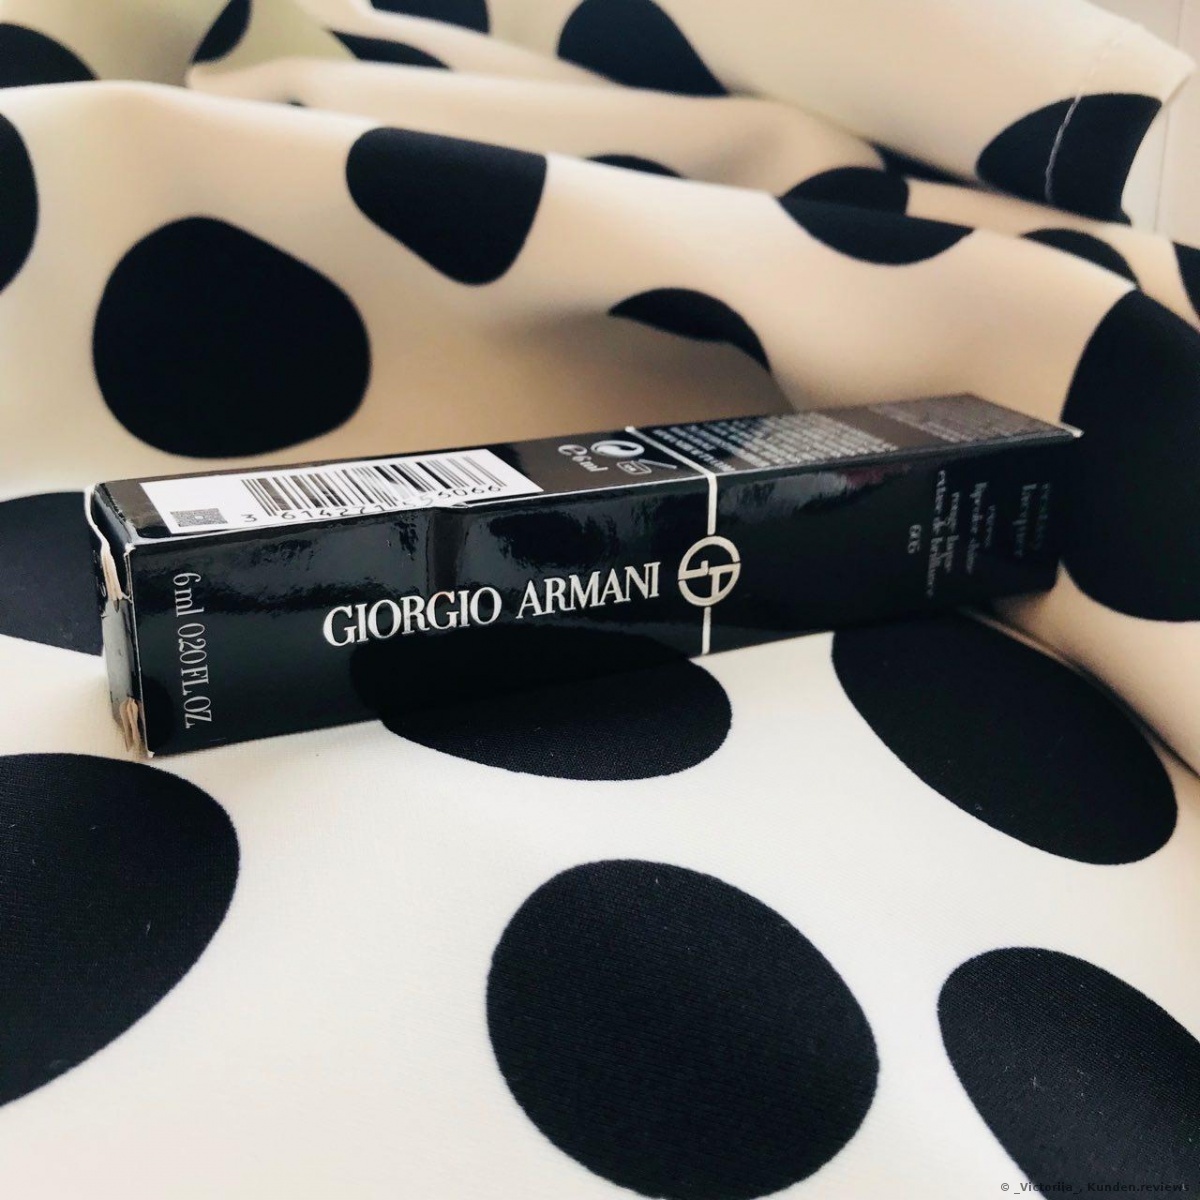 Giorgio Armani Lippen-Make-up Ecstasy Lacquer